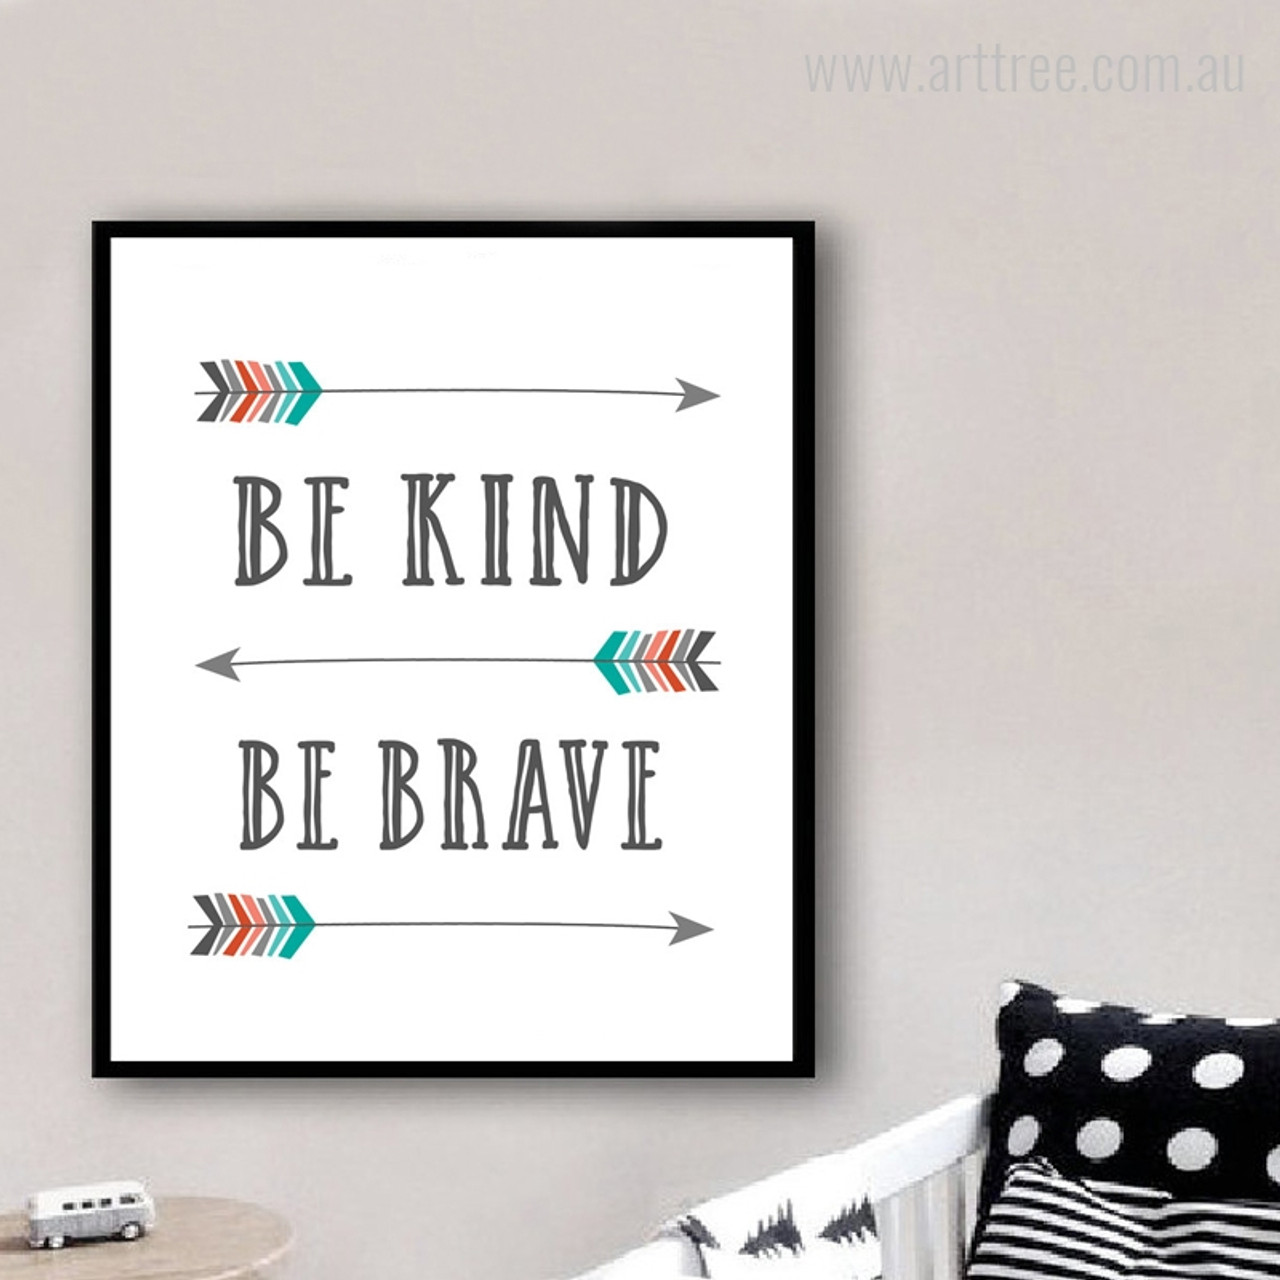 Be Kind Be Brave - arttree.com.au